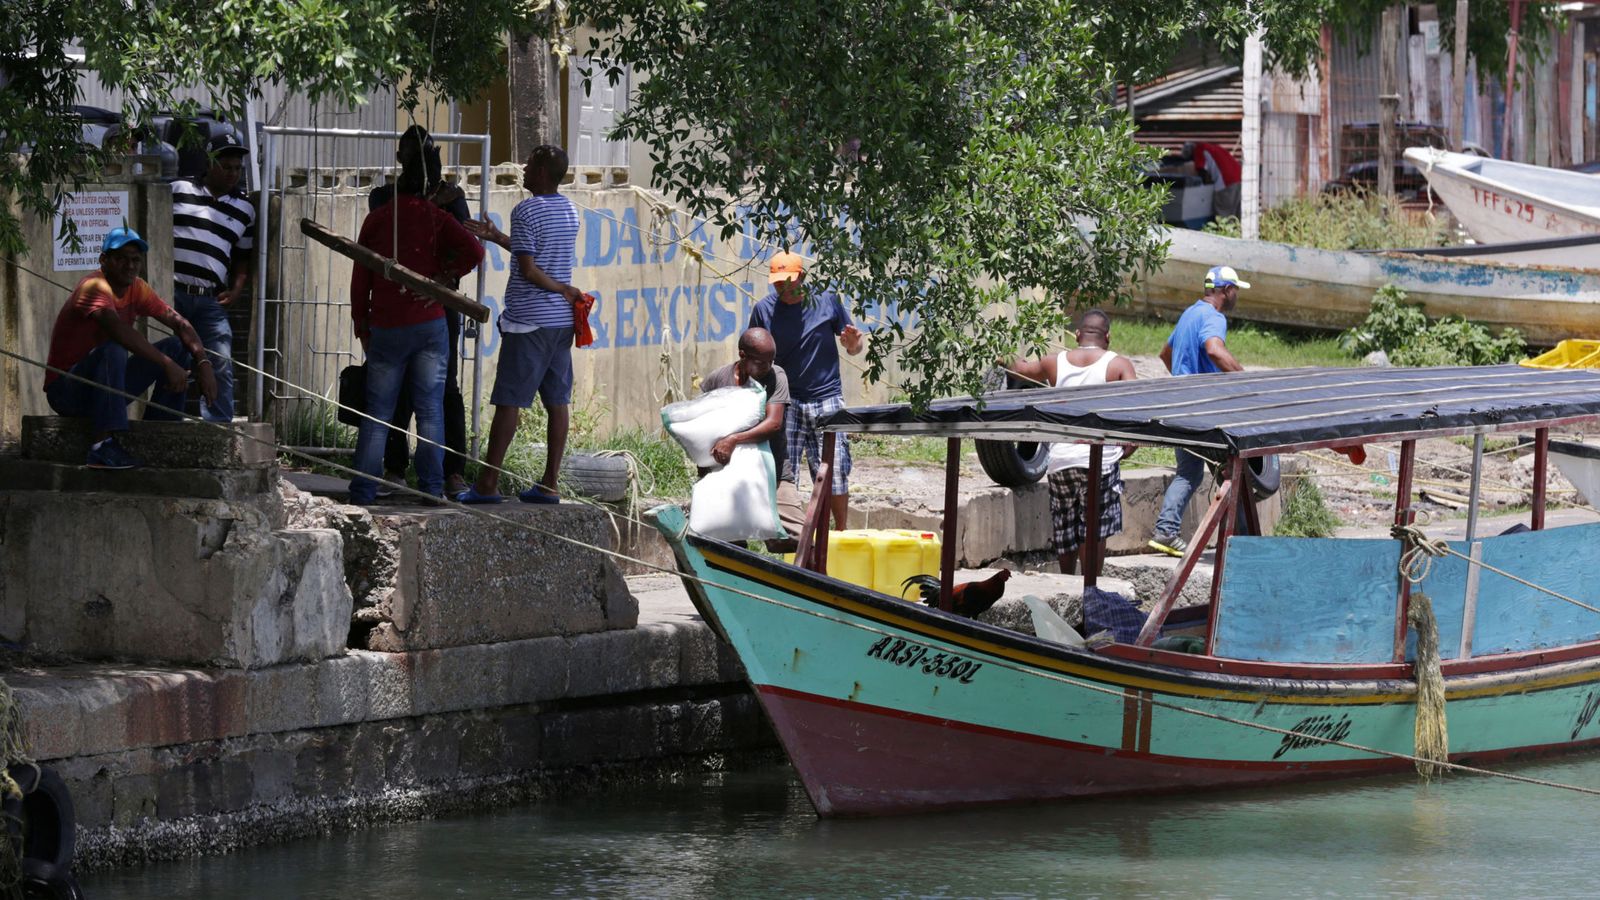 Foto: Venezolanos cargan un barco de comida y bienes comunes para llevar de regreso a su país, en el puerto de San Fernando, Trinidad, el 15 de junio de 2016 (Reuters)